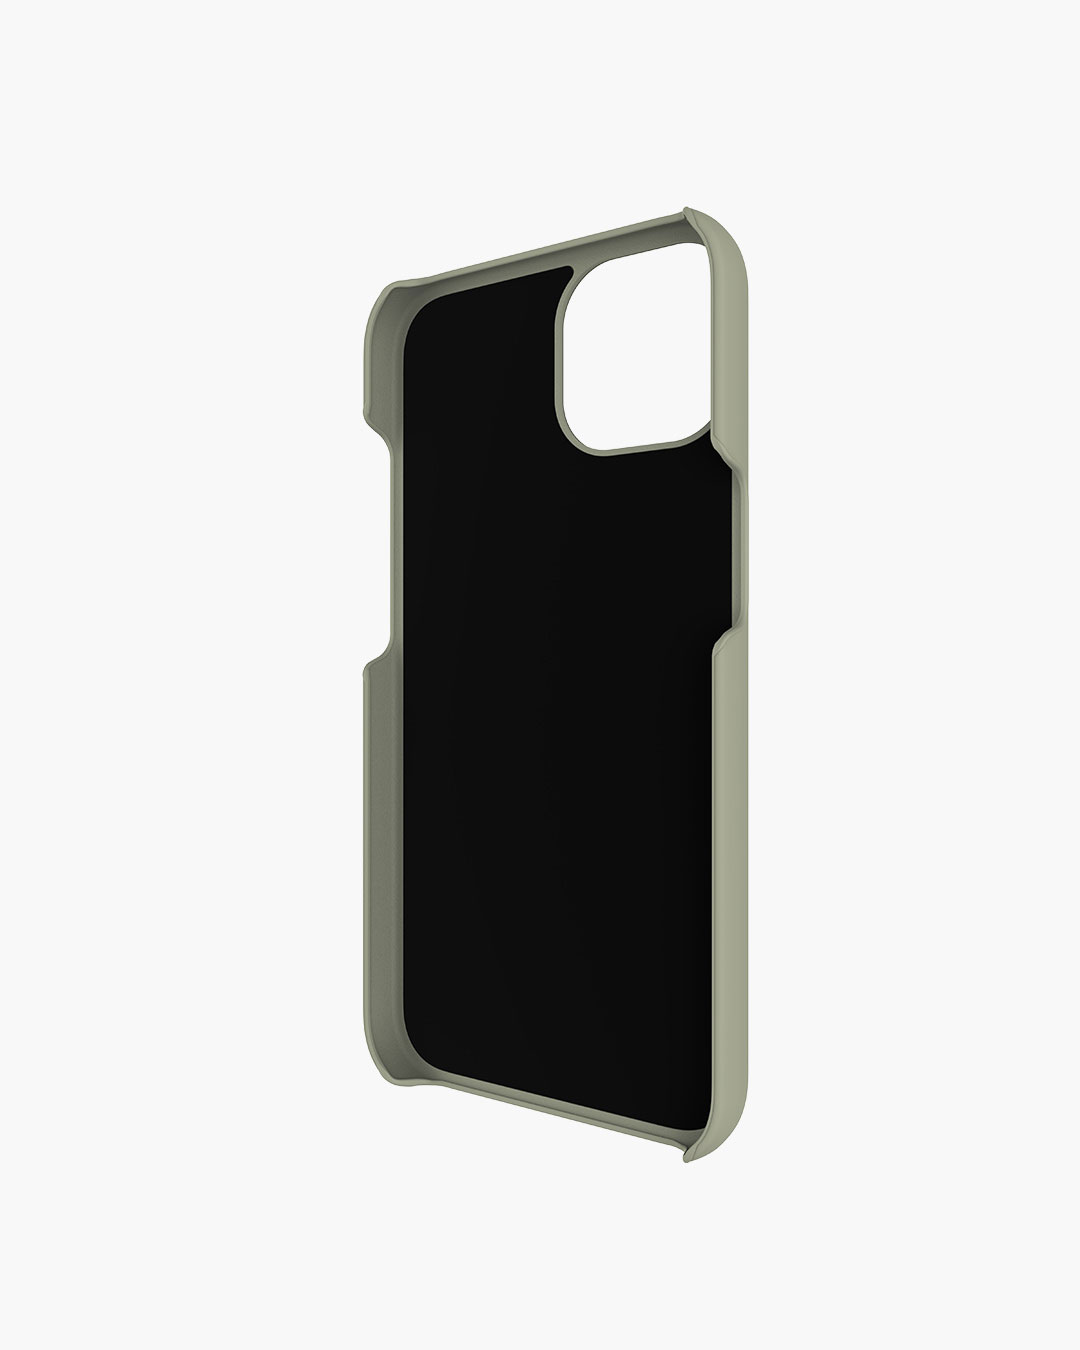 Fresh 'n Rebel - Phone Case iPhone 13 - Dried Green